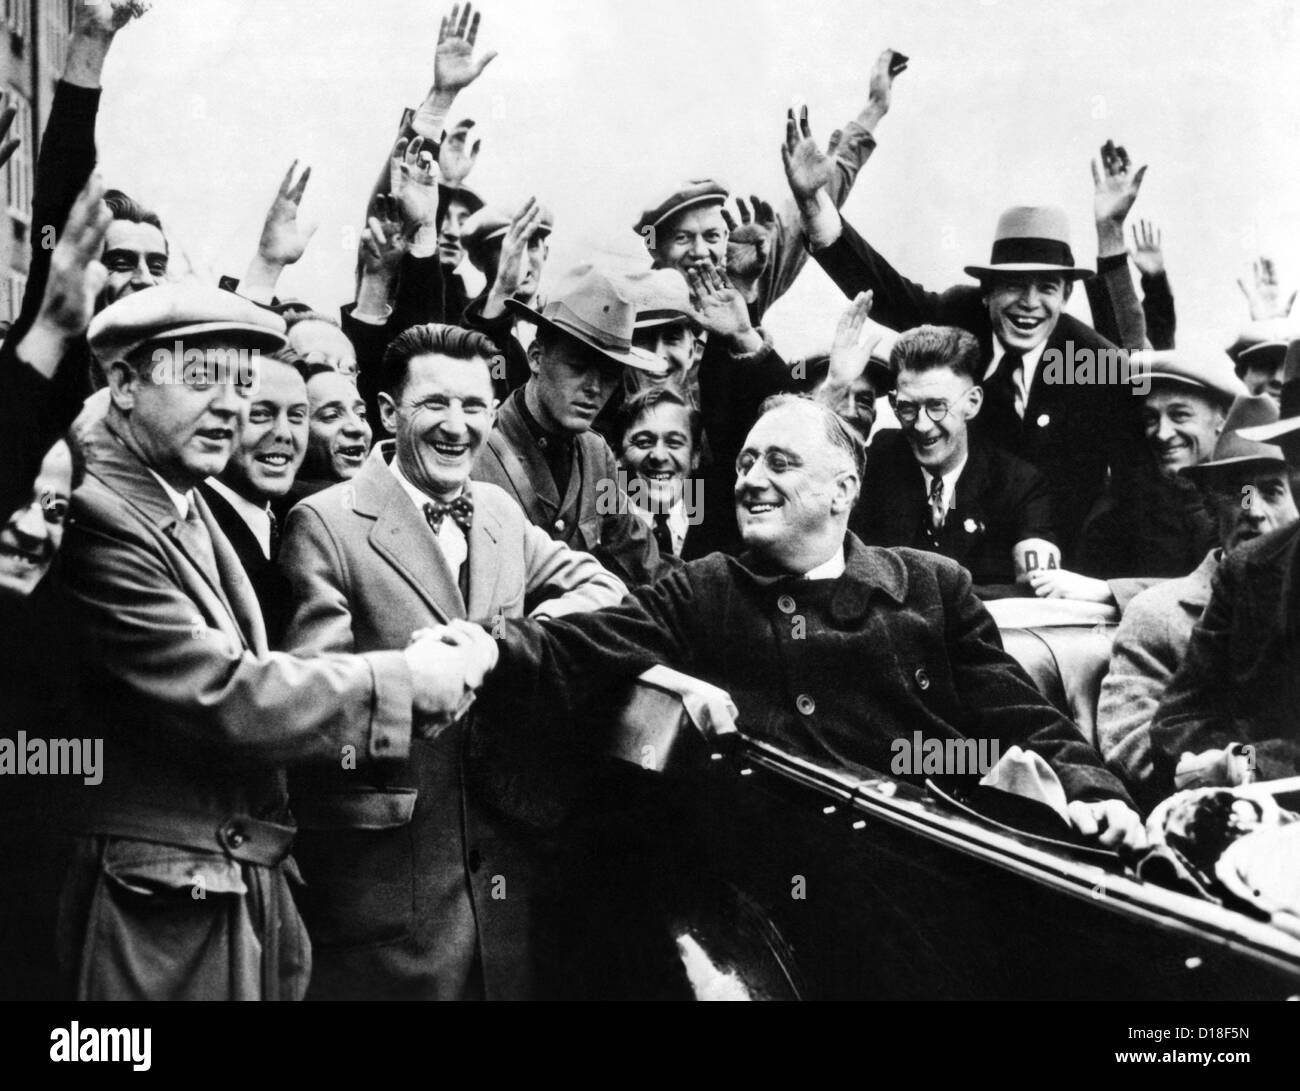 Franklin Roosevelt nel sedile posteriore della sua vettura, circondato da tifo dei cittadini. 1930s. (CSU ALPHA 33) Archivi CSU/Everett Foto Stock